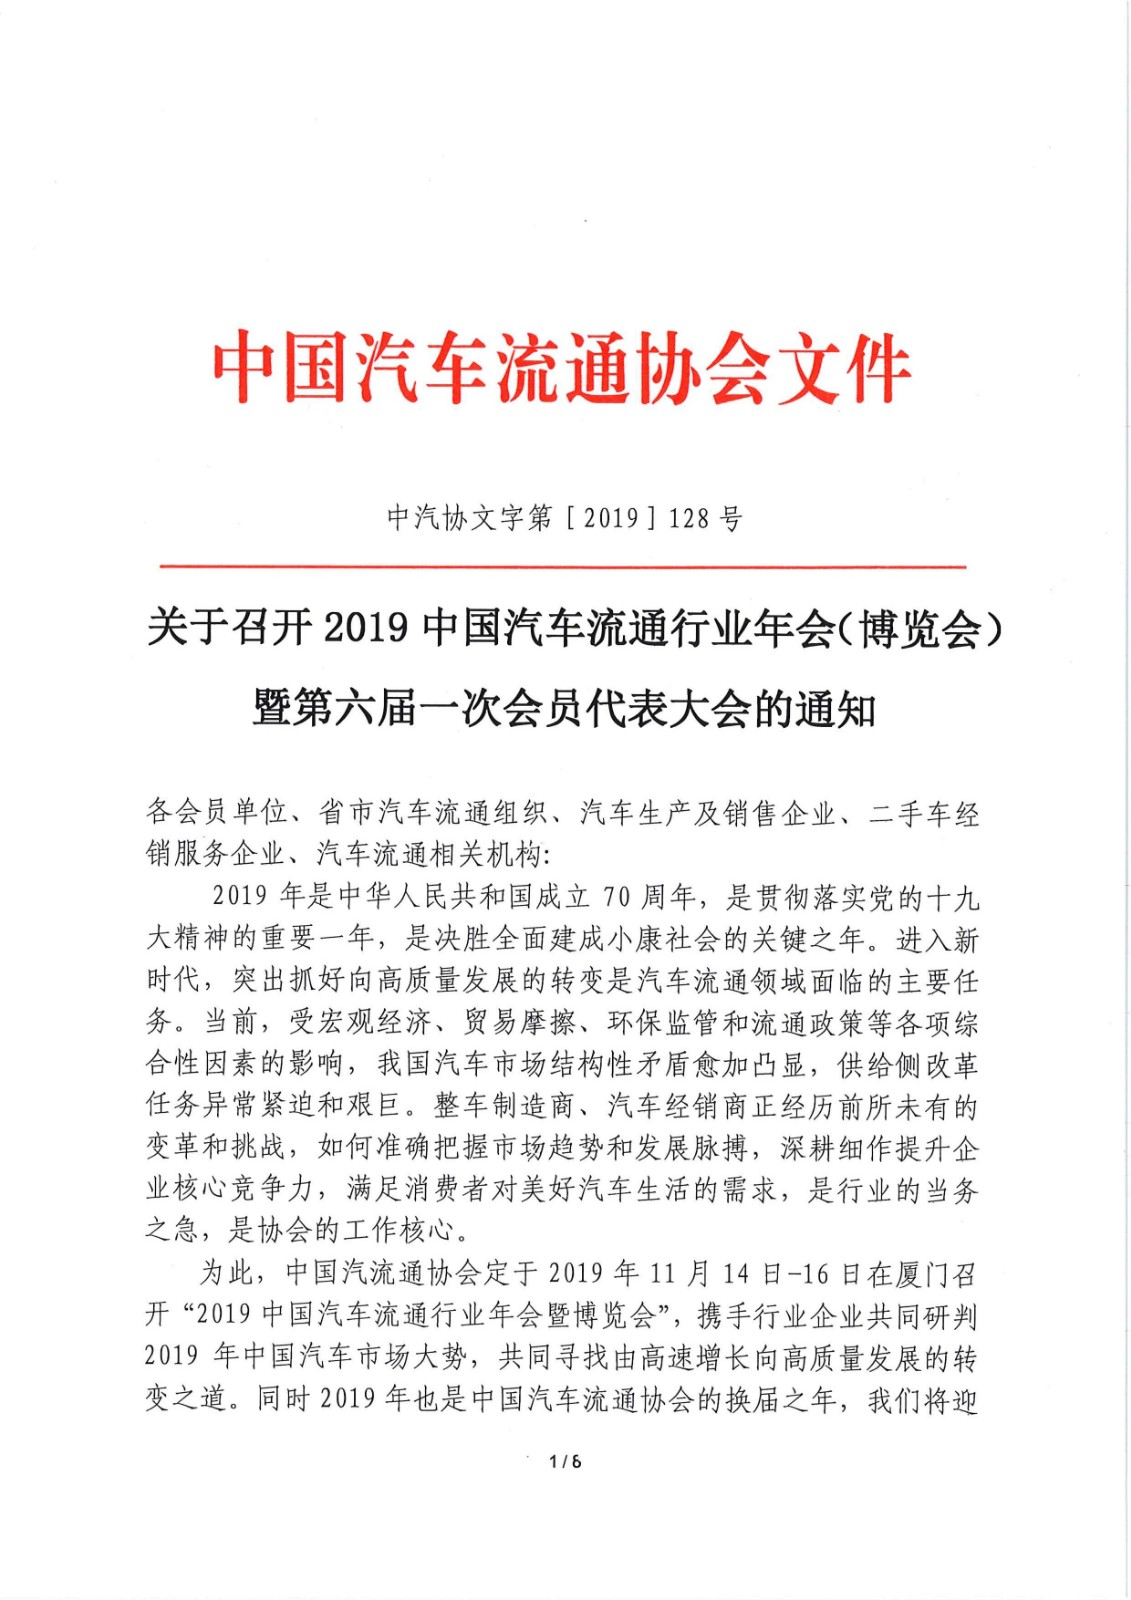 关于召开2019中国汽车流通行业年会（博览会）暨第六届一次会员代表大会的通知_页面_1.jpg